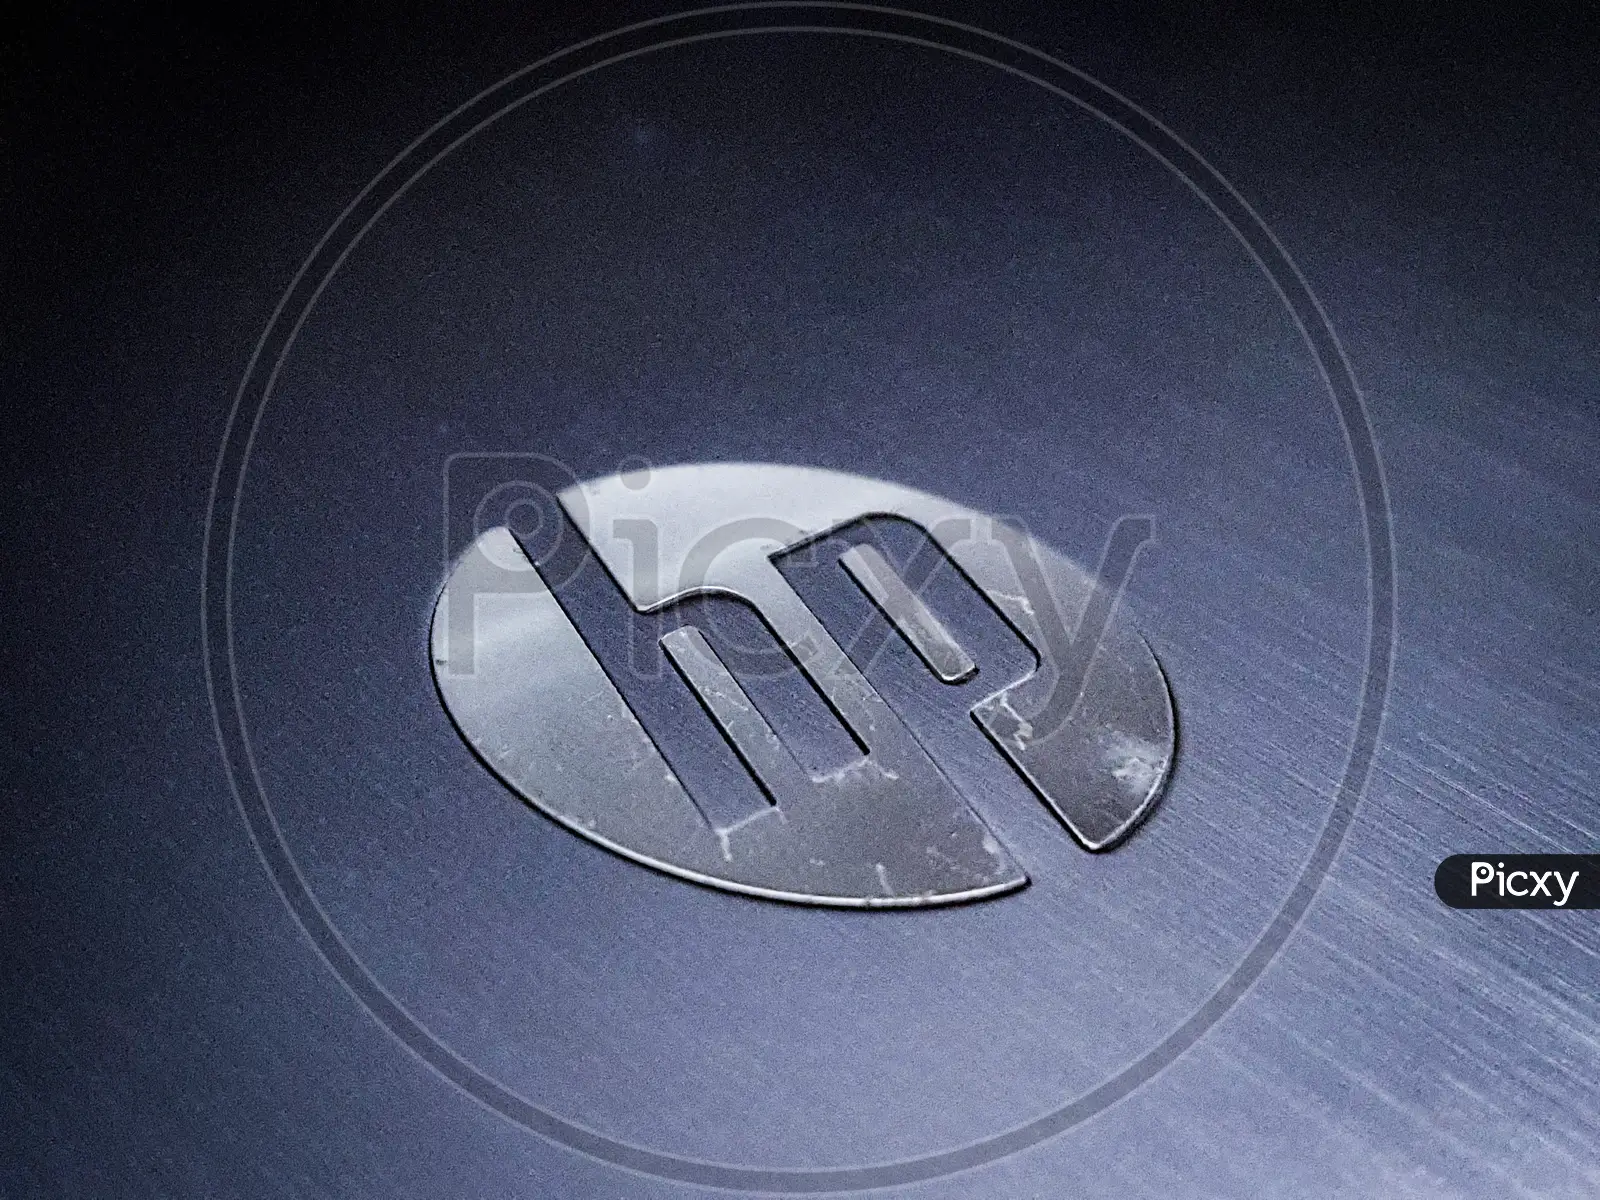 hp logo wallpaper